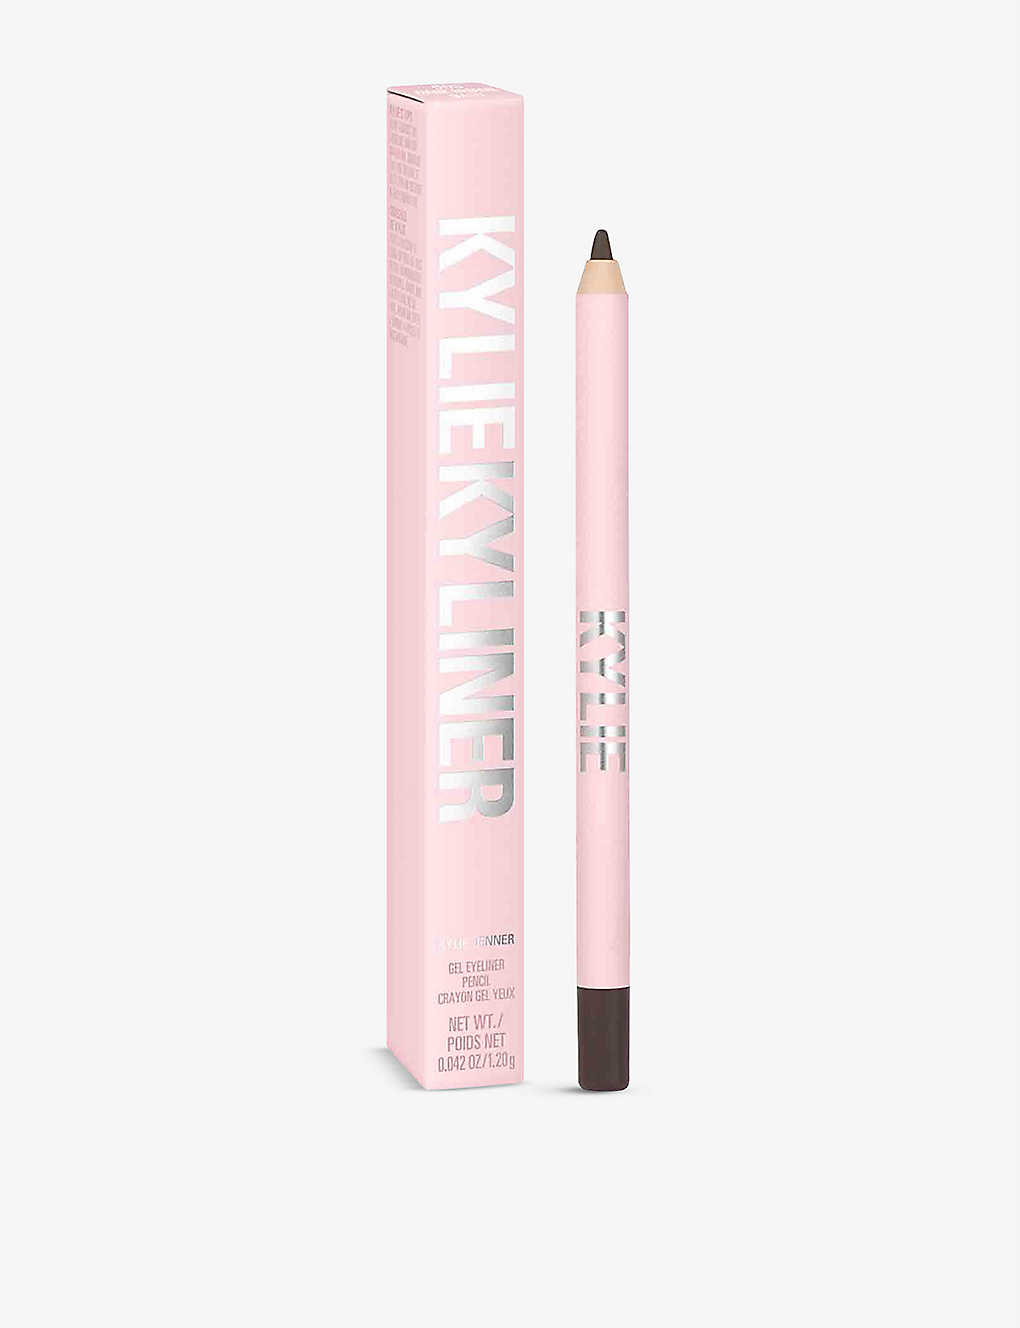 Kylie By Kylie Jenner Kyliner Gel Pencil 4.25g In 003 Matte Dark Brown